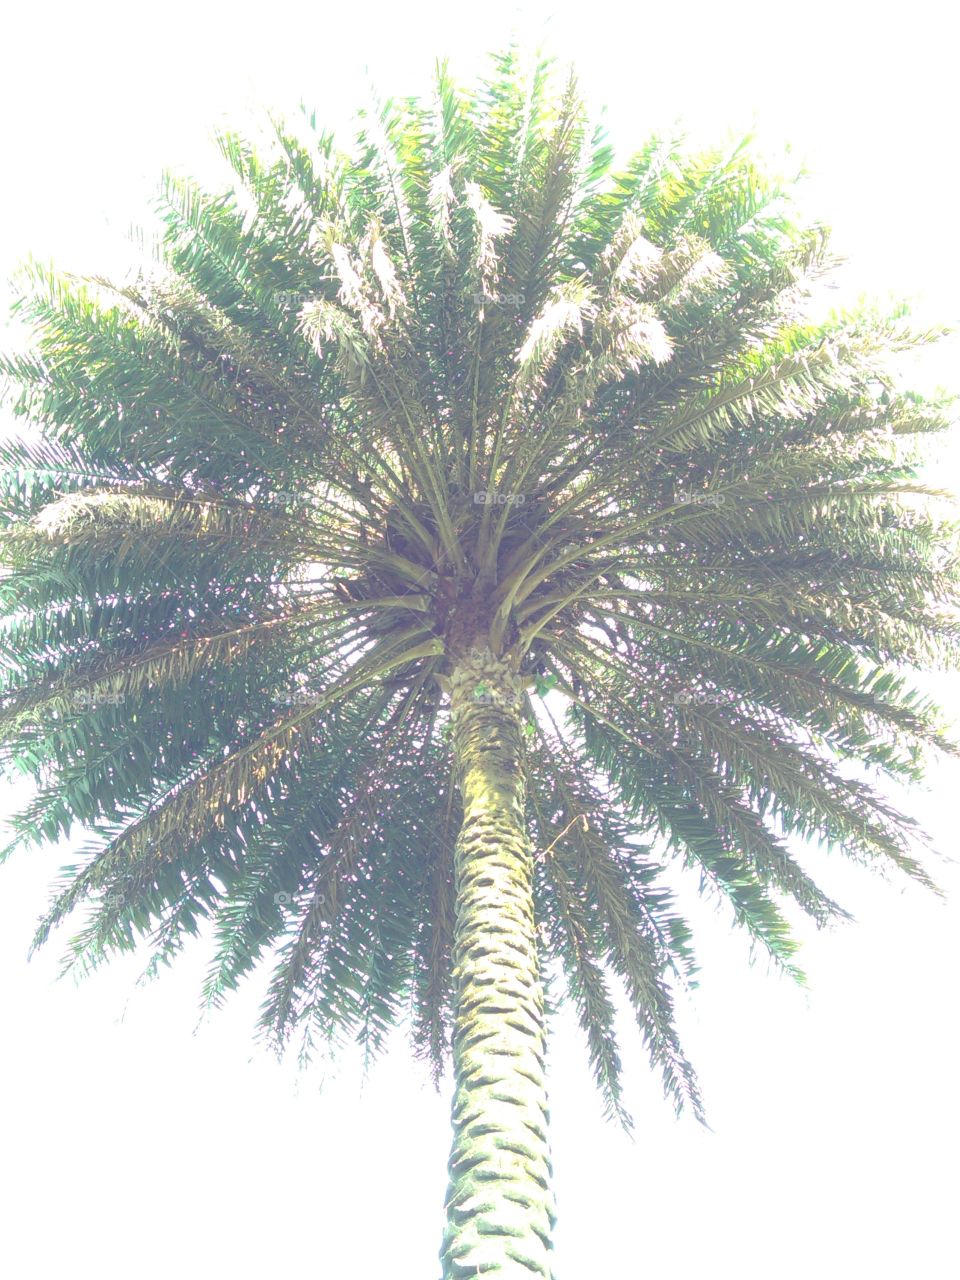 Fotografías de diferentes palmeras tardías de cámara desde abajo.